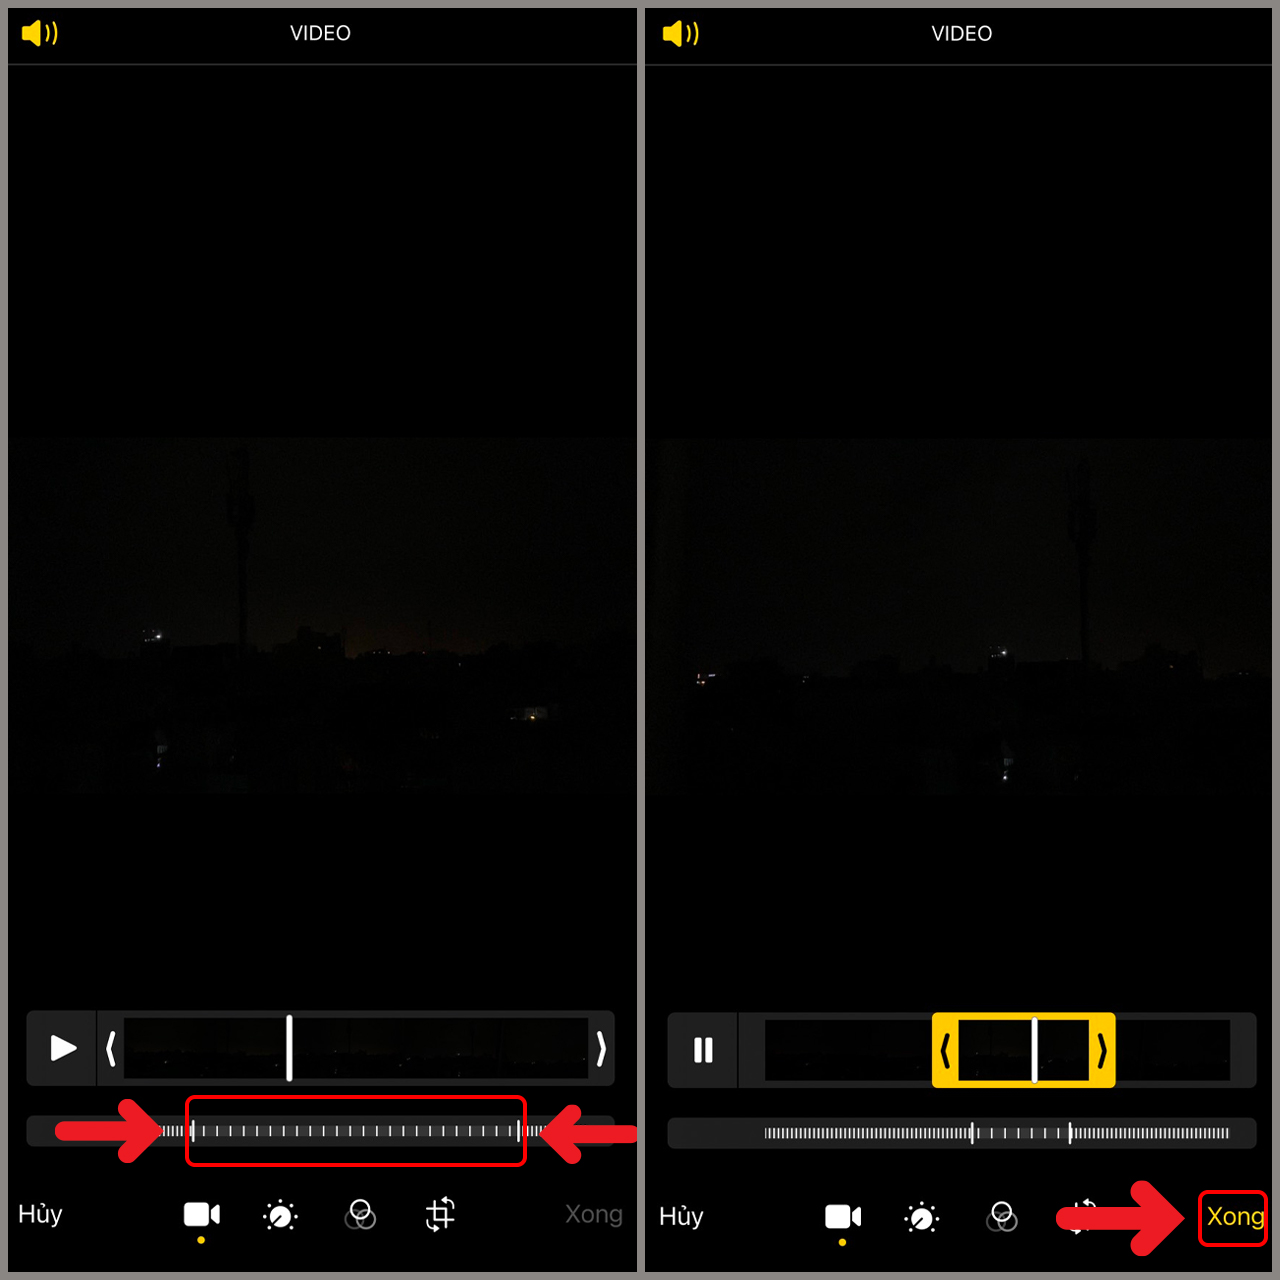 Cách chỉnh sửa video chuyển động chậm trên iPhone